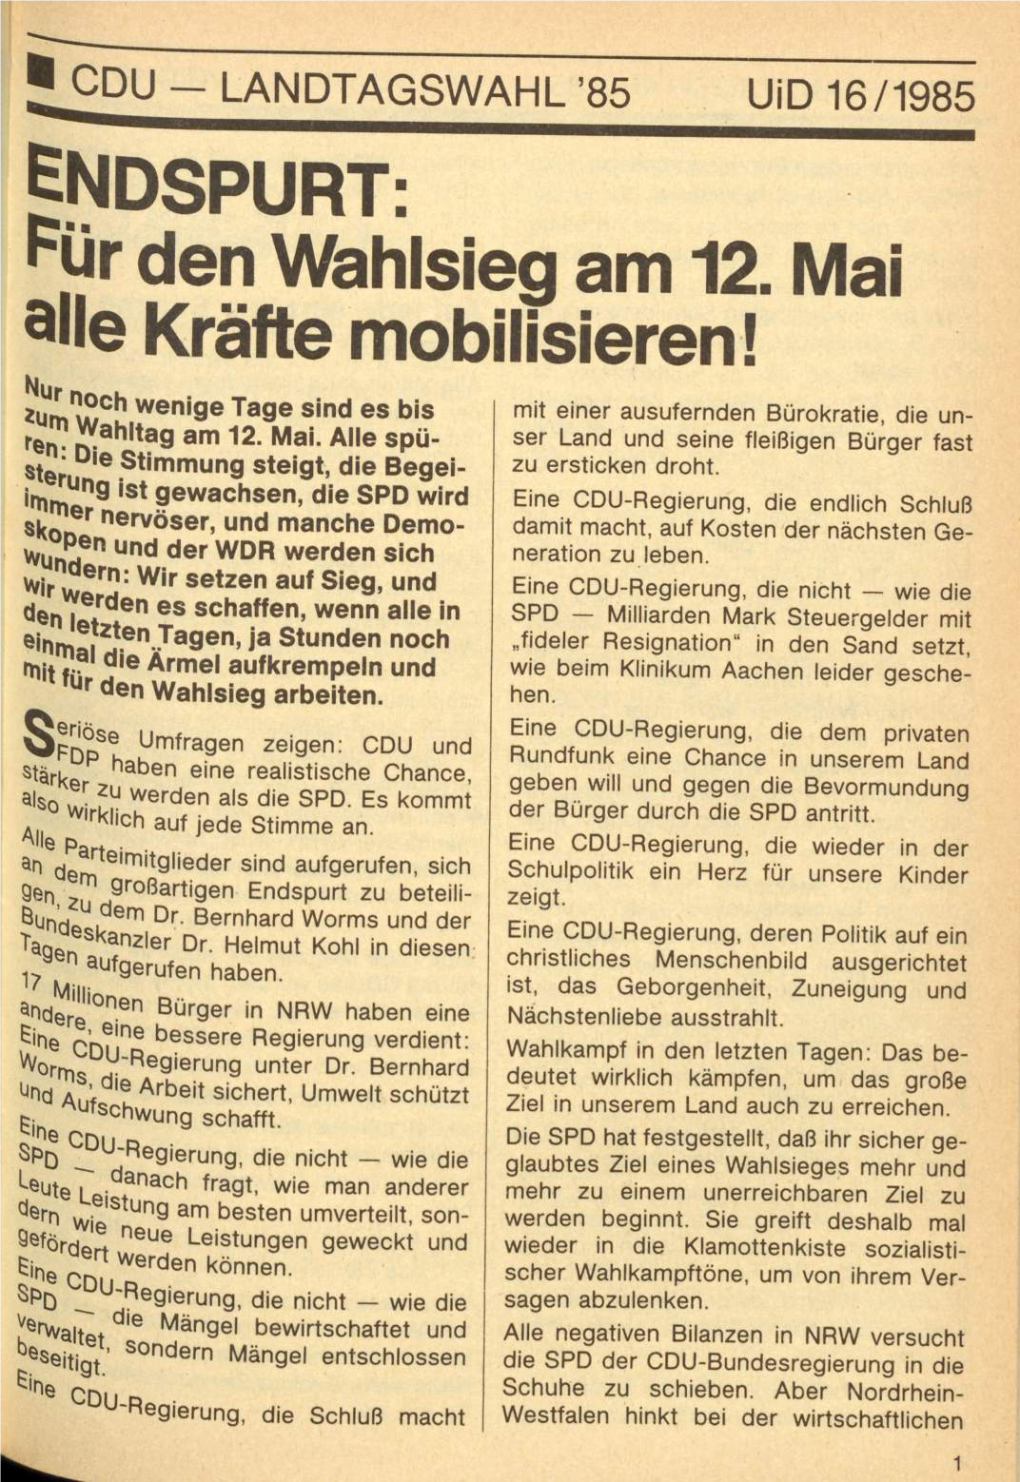 UID 1985 Nr. 16 Beilage: CDU-Landtagswahl, Union in Deutschland